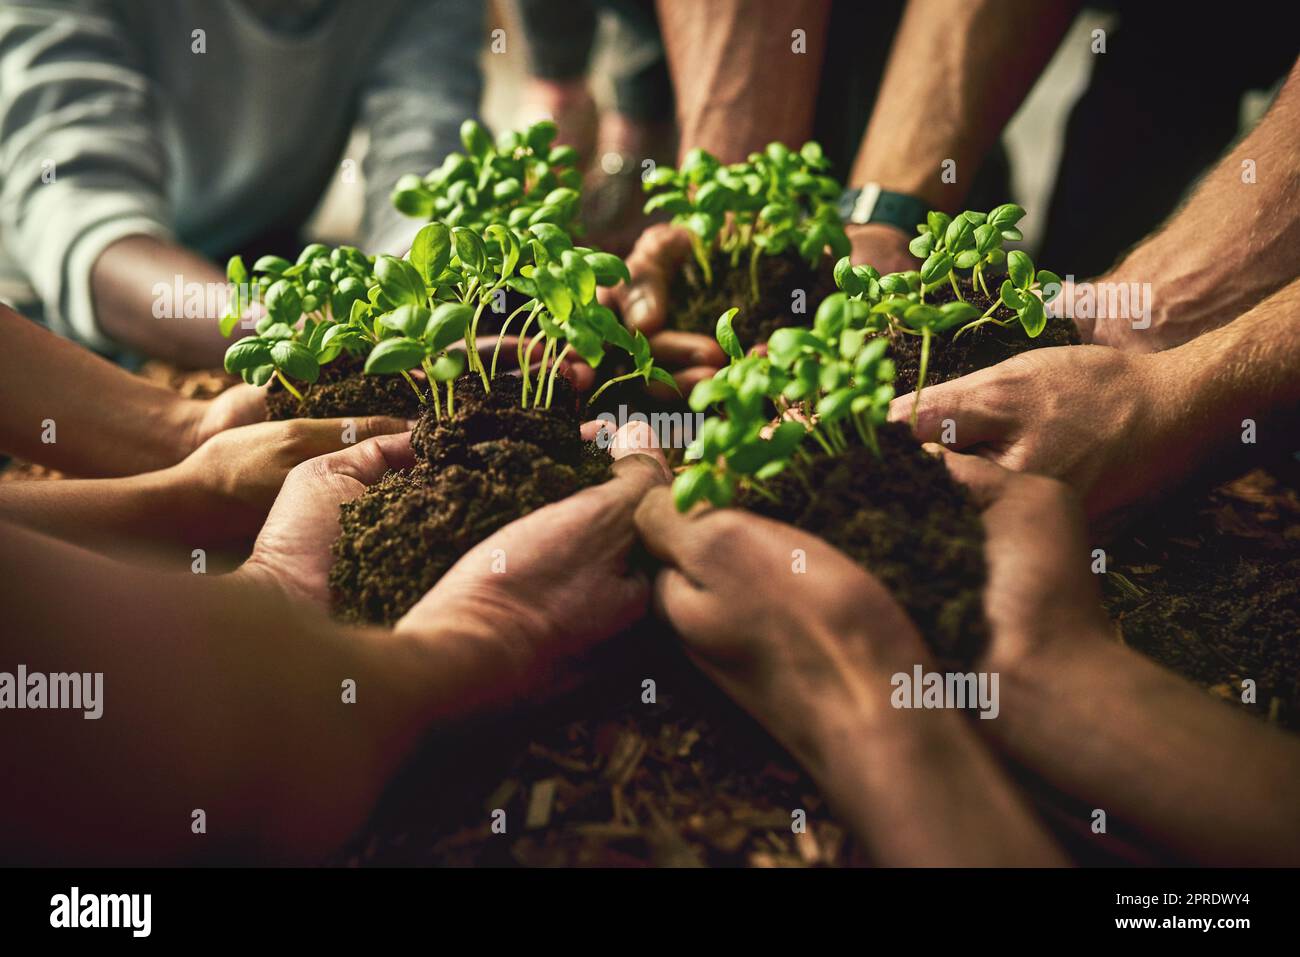 Hände Pflanzen frische grüne Pflanzen, die gesundes Wachstum, Fortschritt und Entwicklung zeigen. Nahaufnahme einer vielfältigen Gruppe von Umweltschützern, die in der Agrarindustrie für Nachhaltigkeit arbeiten Stockfoto